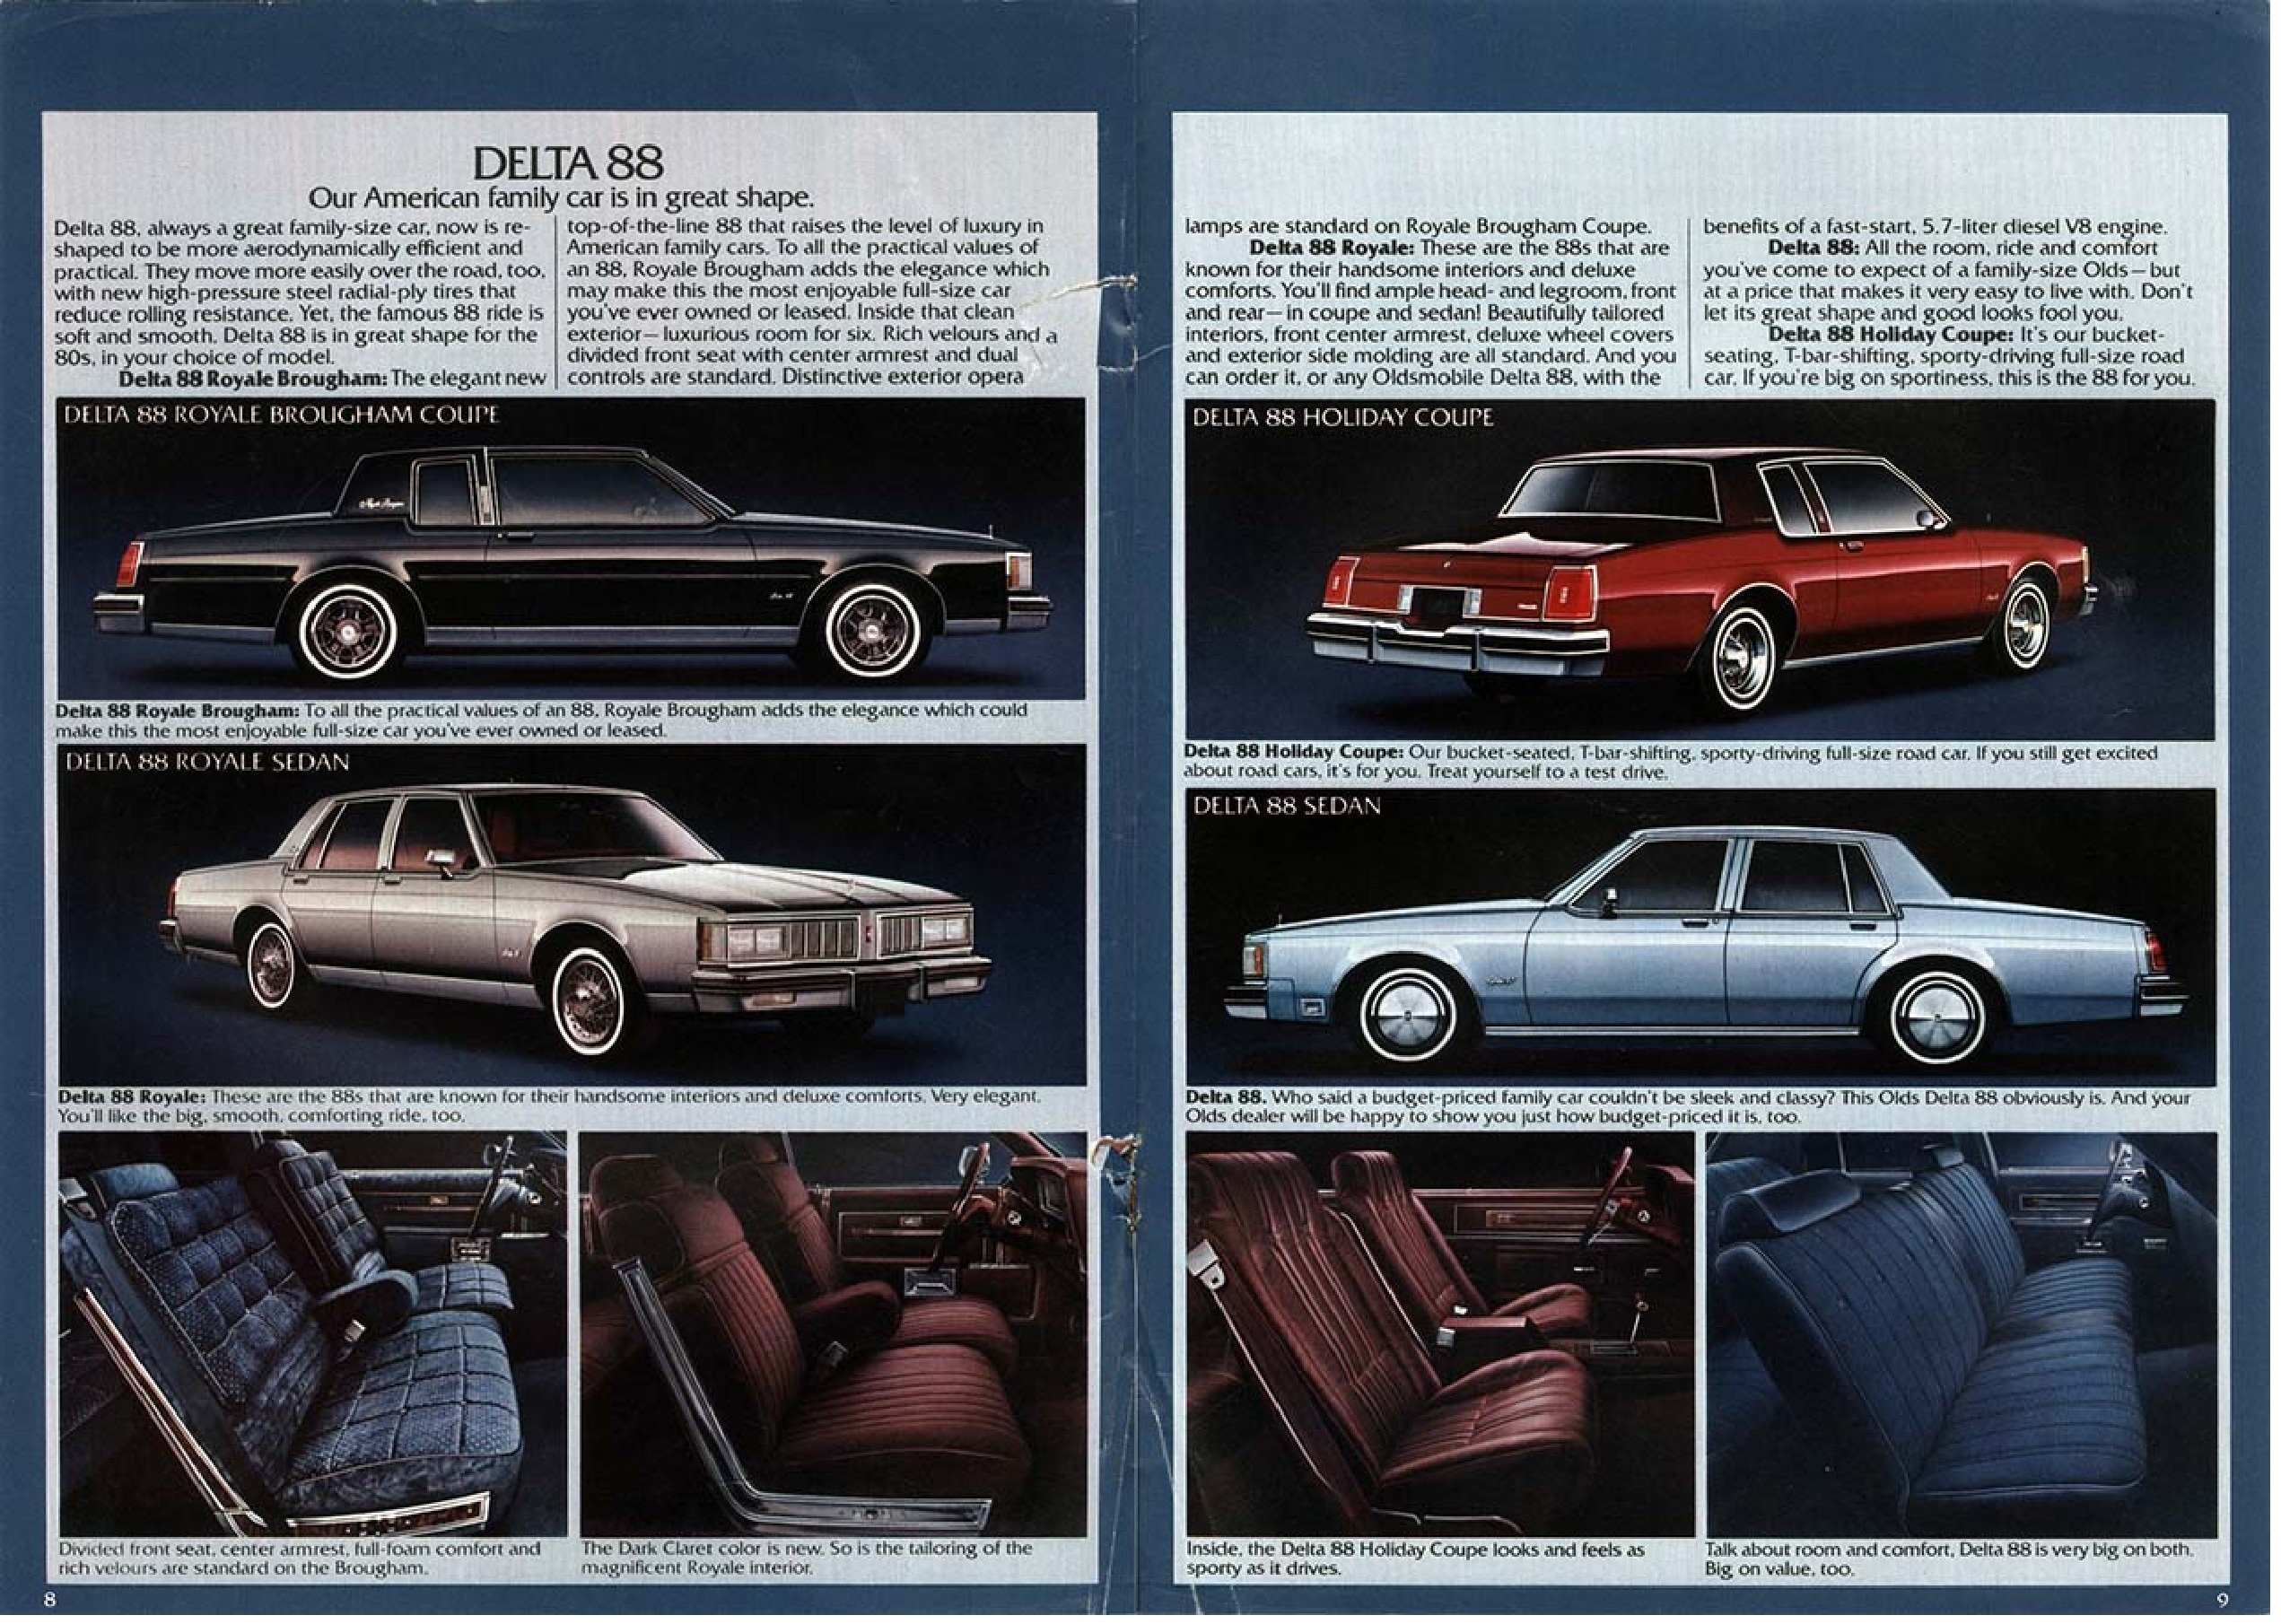 1980 Oldsmobile Full Line Brochure 08-09